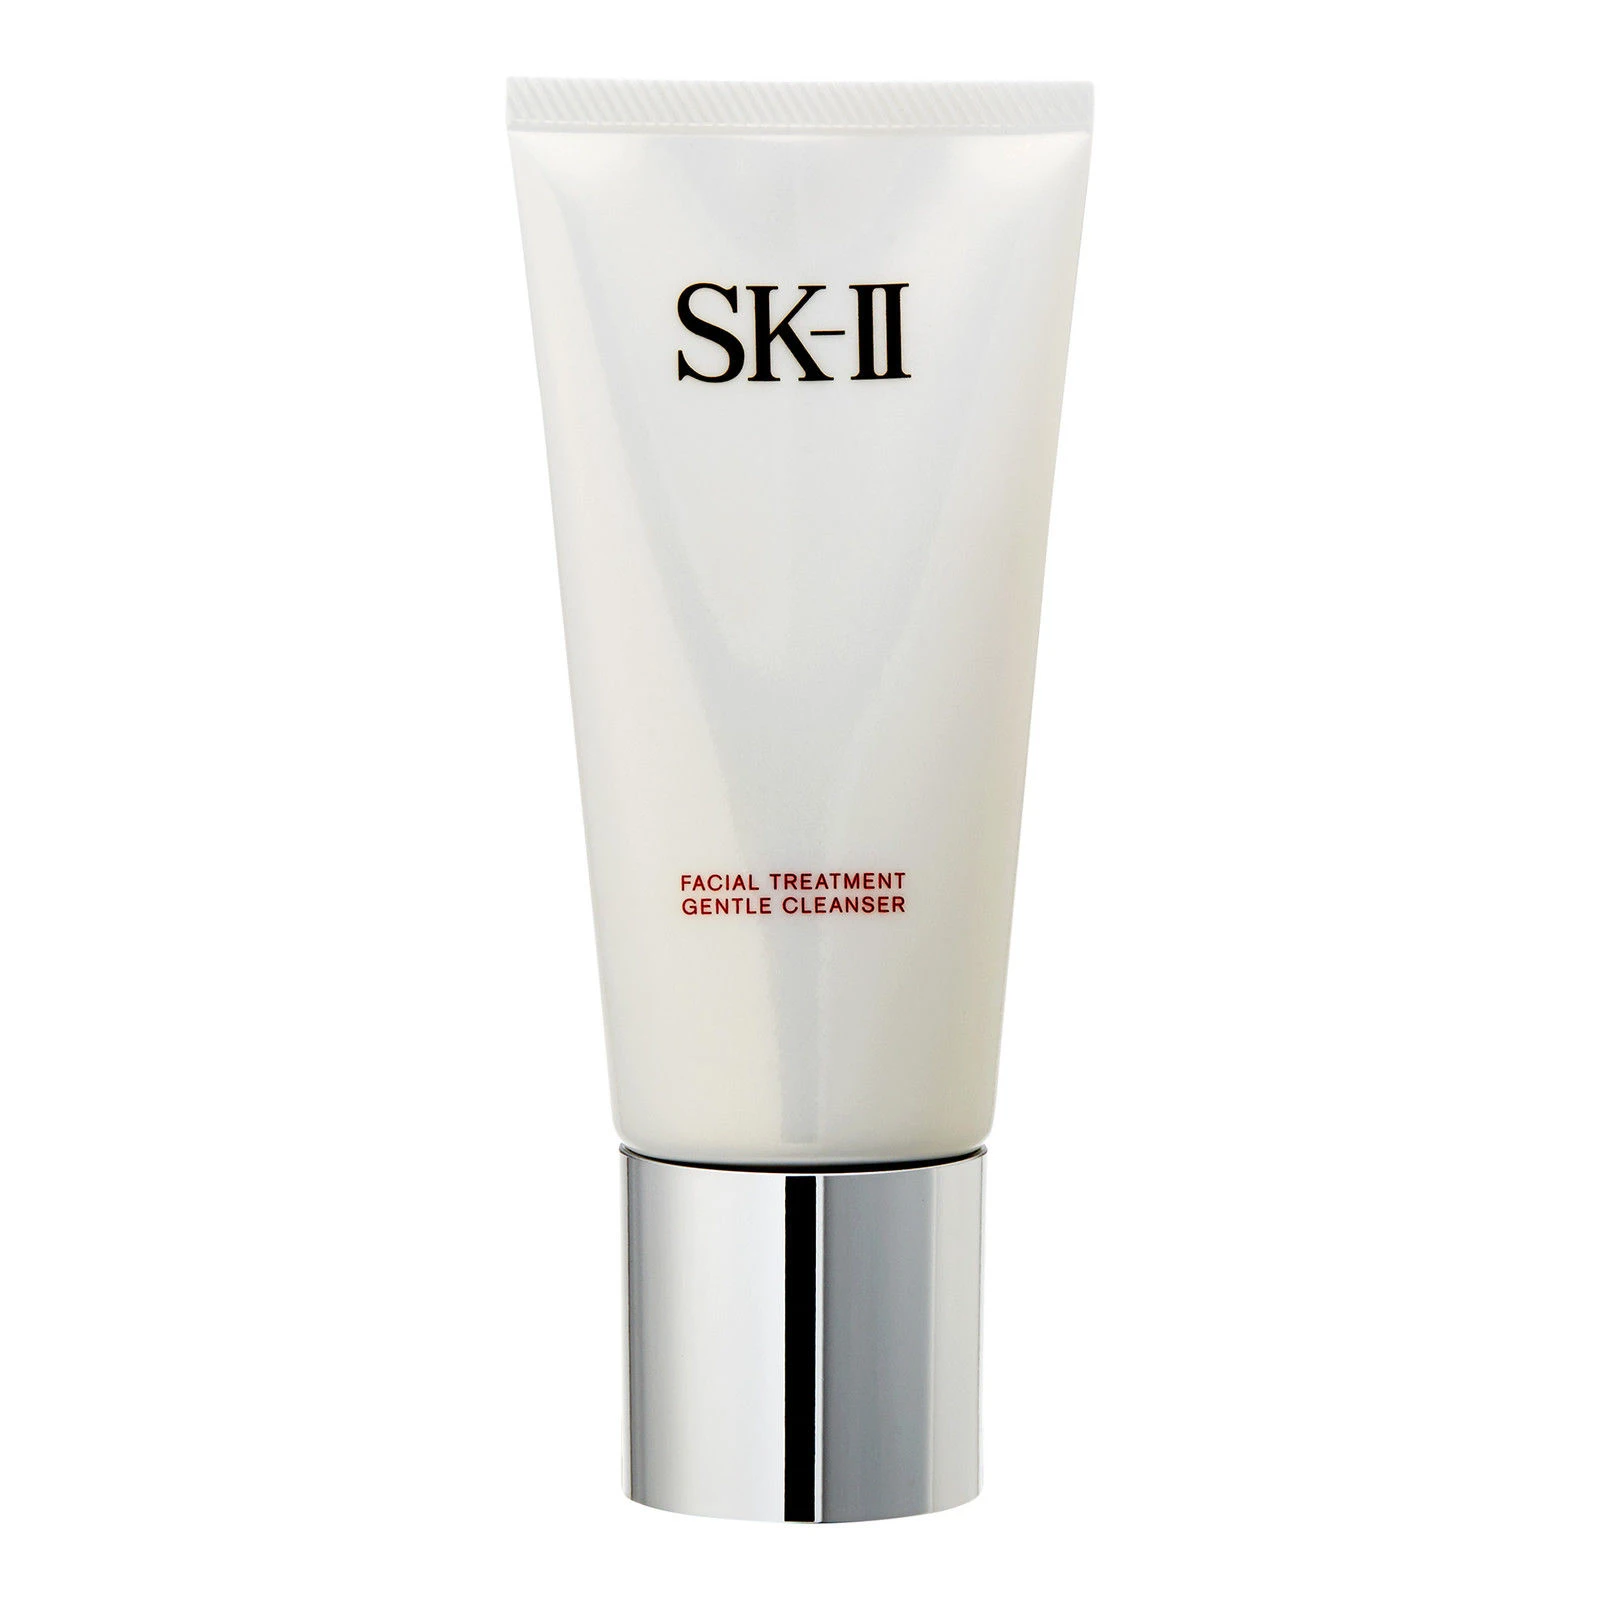 SK-II | SK2舒透护肤洁面霜120g保湿清洁氨基酸洁面乳 8.9折, 2件9.5折, 包邮包税, 独家减免邮费, 满折